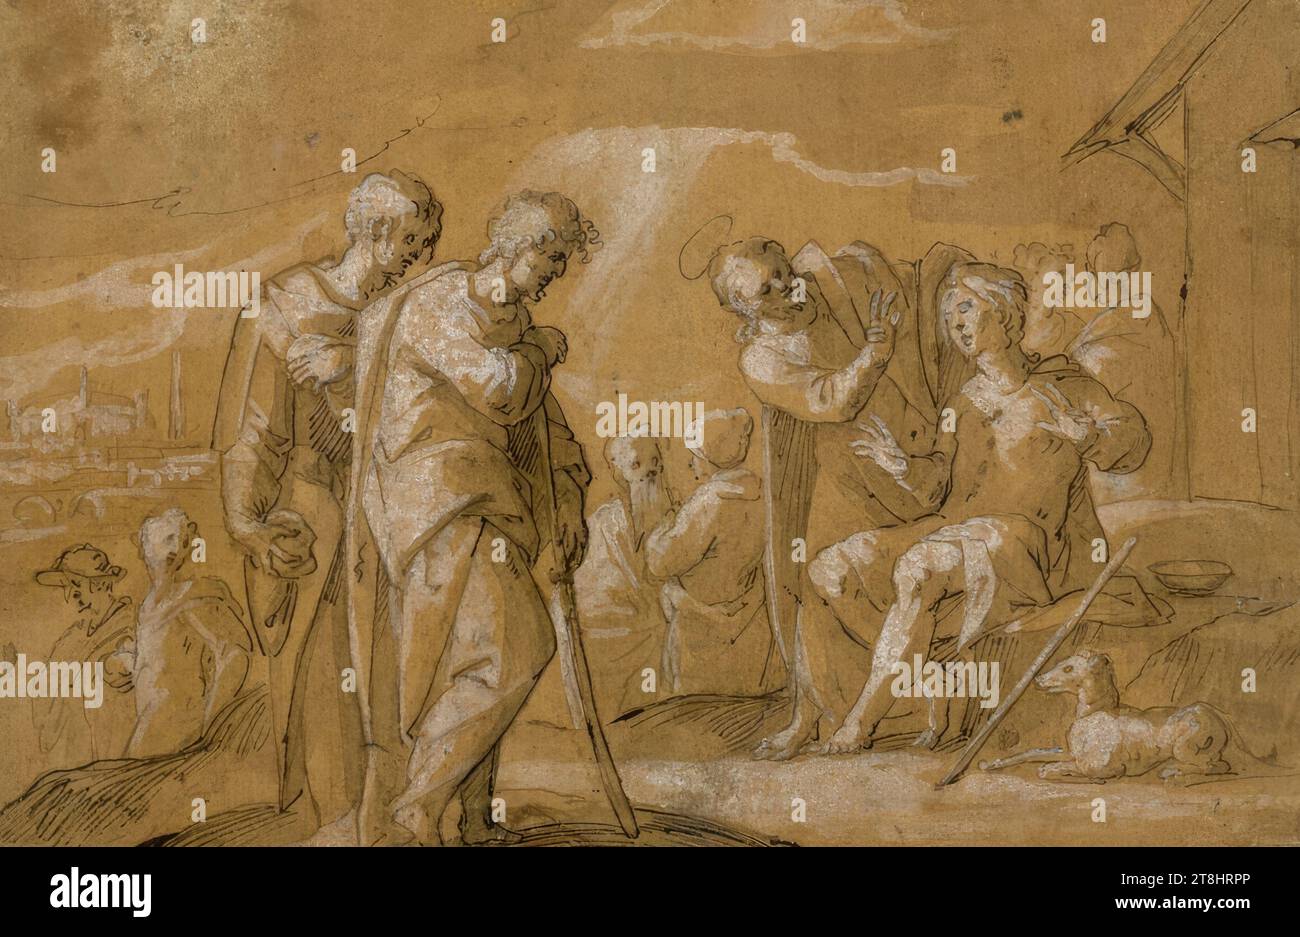 Gesù guarisce un cieco, fine XVI secolo, disegno, penna in grigio chiaro e nero su carta ocra dorata, accresciuta con bianco, 20,6 x 30,4 cm, l.o. in piuma in nero 'S. LVCA. XVIII CA Foto Stock